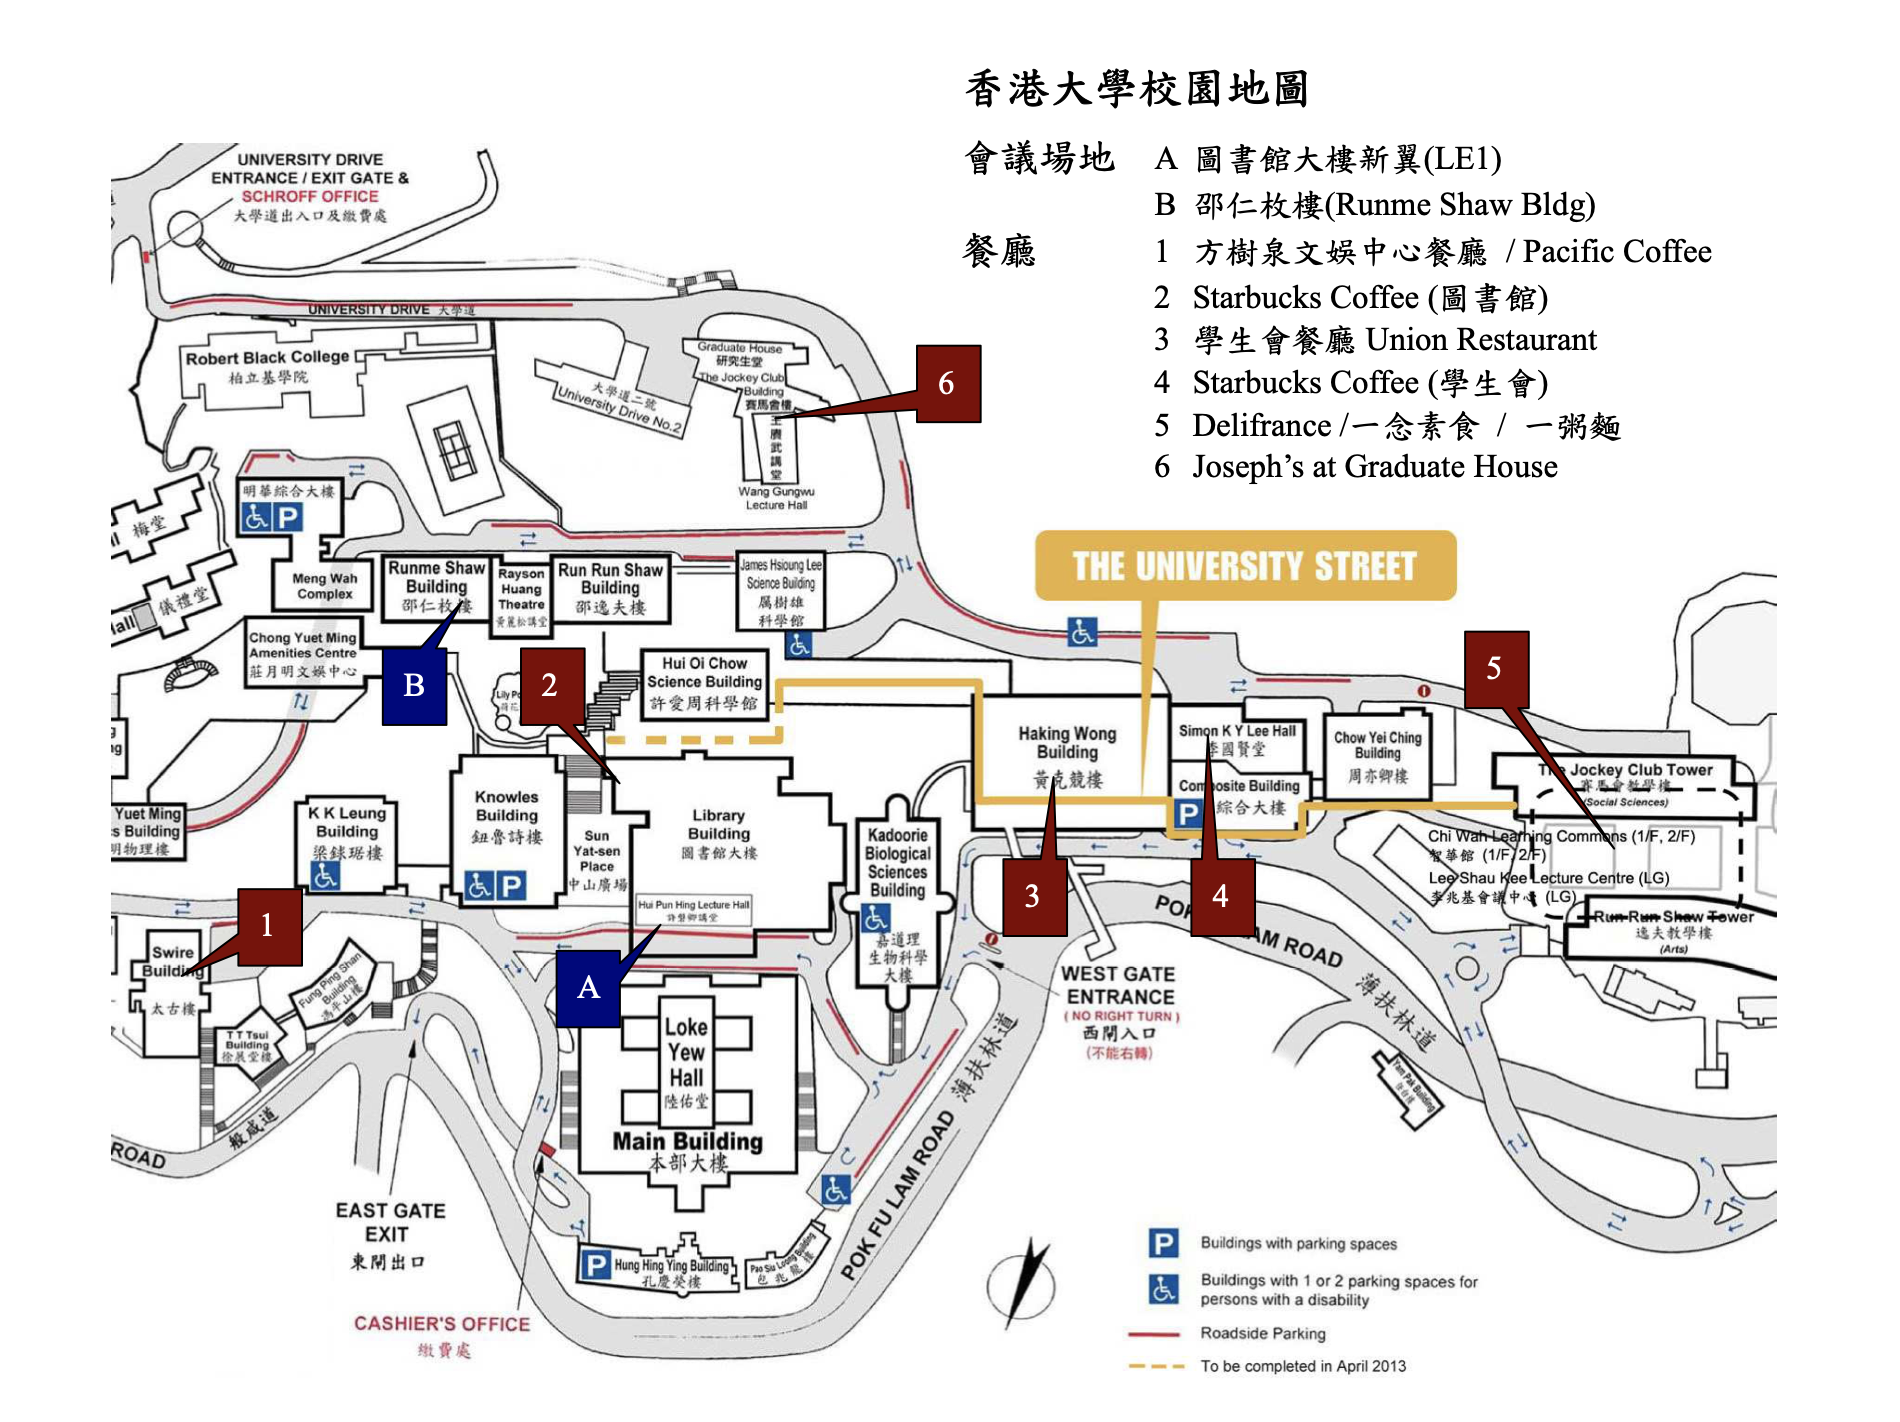 【香港院校指南】香港大学地图及专业详情 